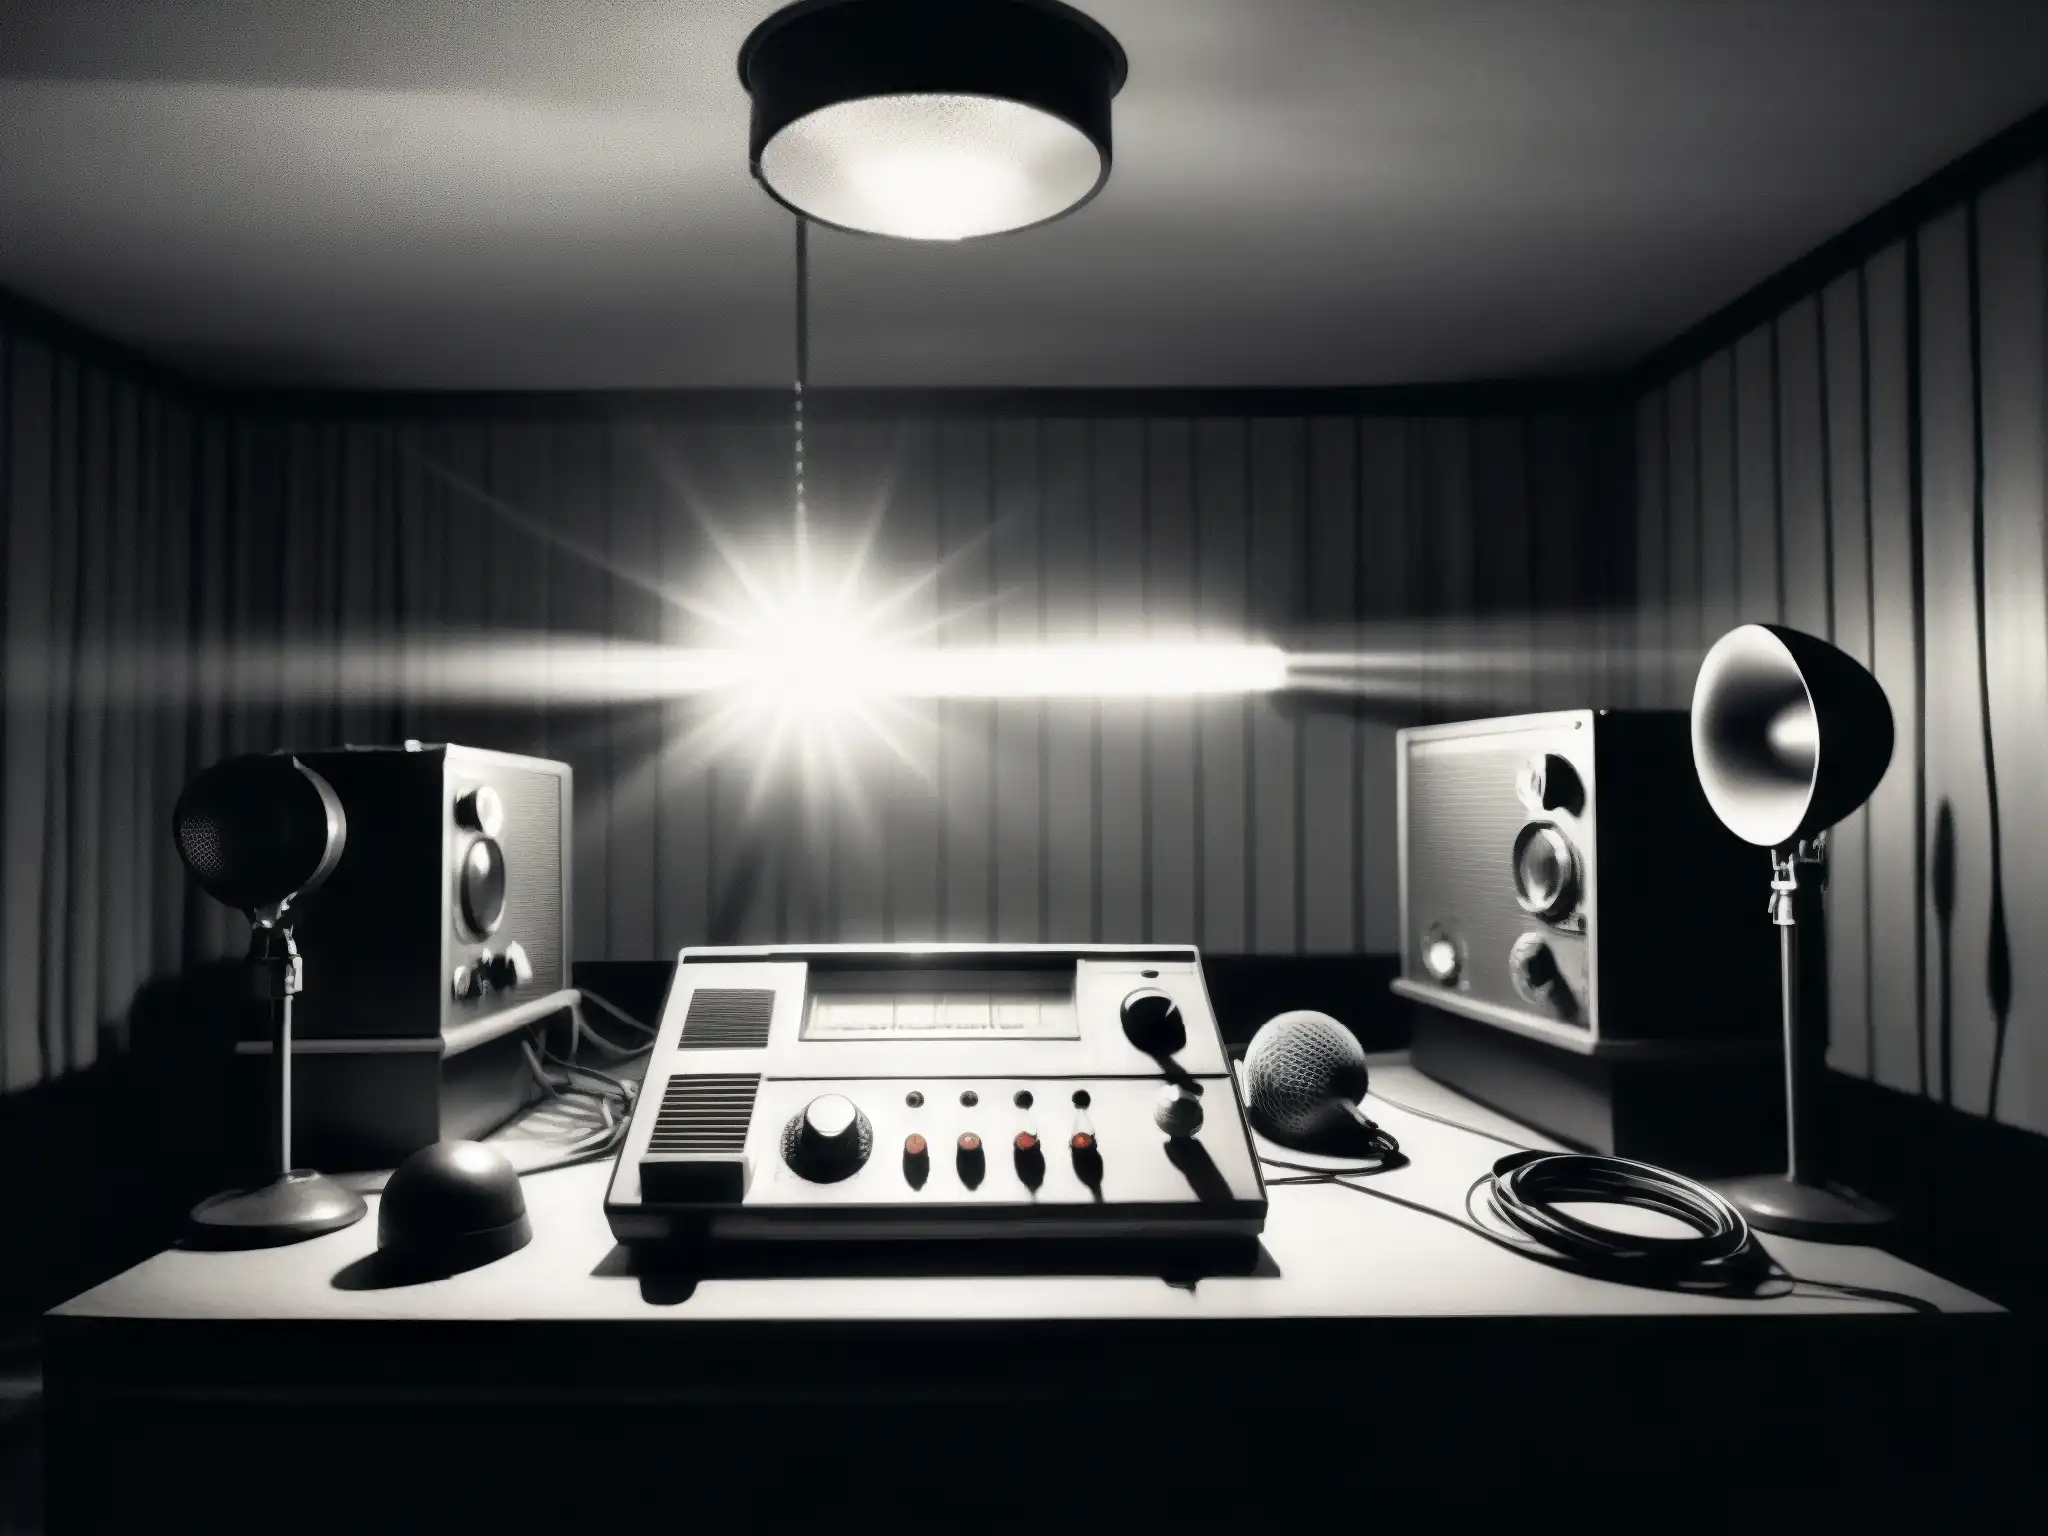 Imagen de estudio de radioteatro de terror con micrófonos antiguos, luces tenues y suspenso, evocando leyendas urbanas